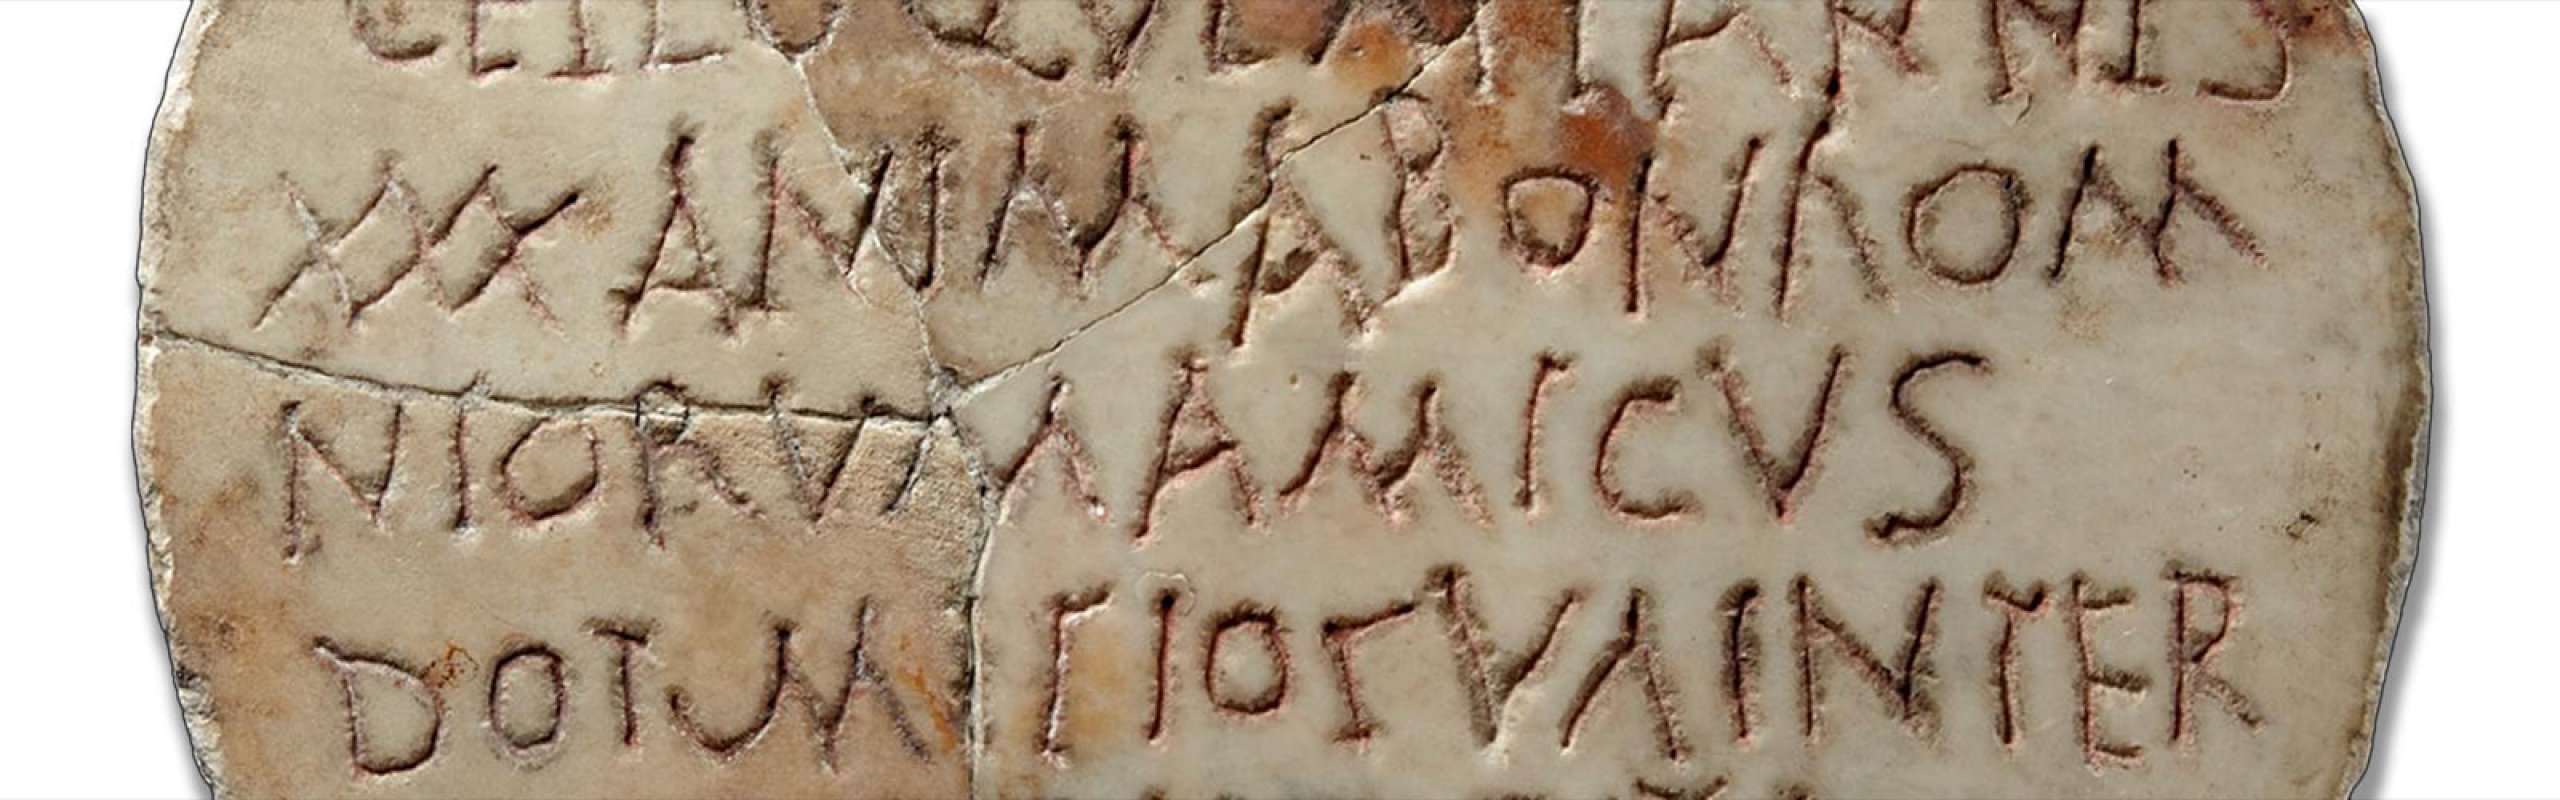 Roma Britannica: Britain and the British in the Latin inscriptions of Rome